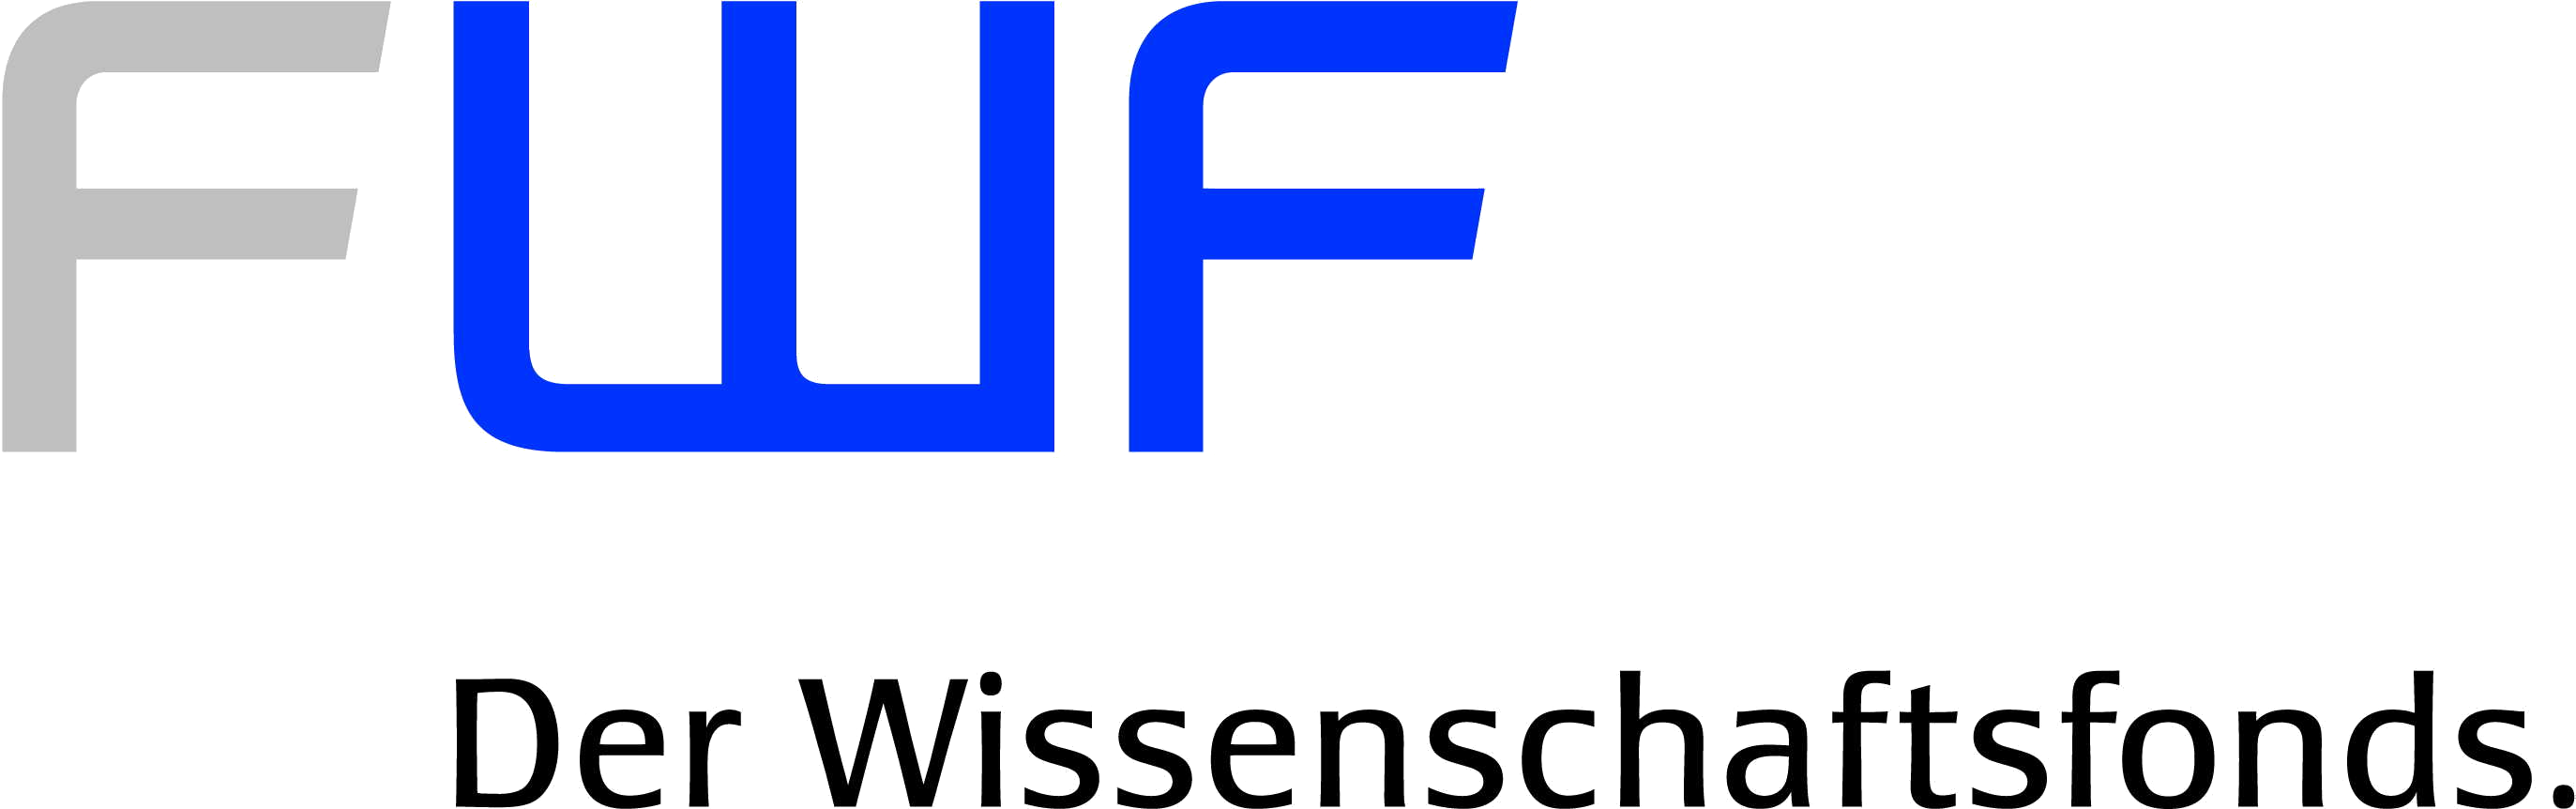 FWF Der Wissenschaftsfond Logo